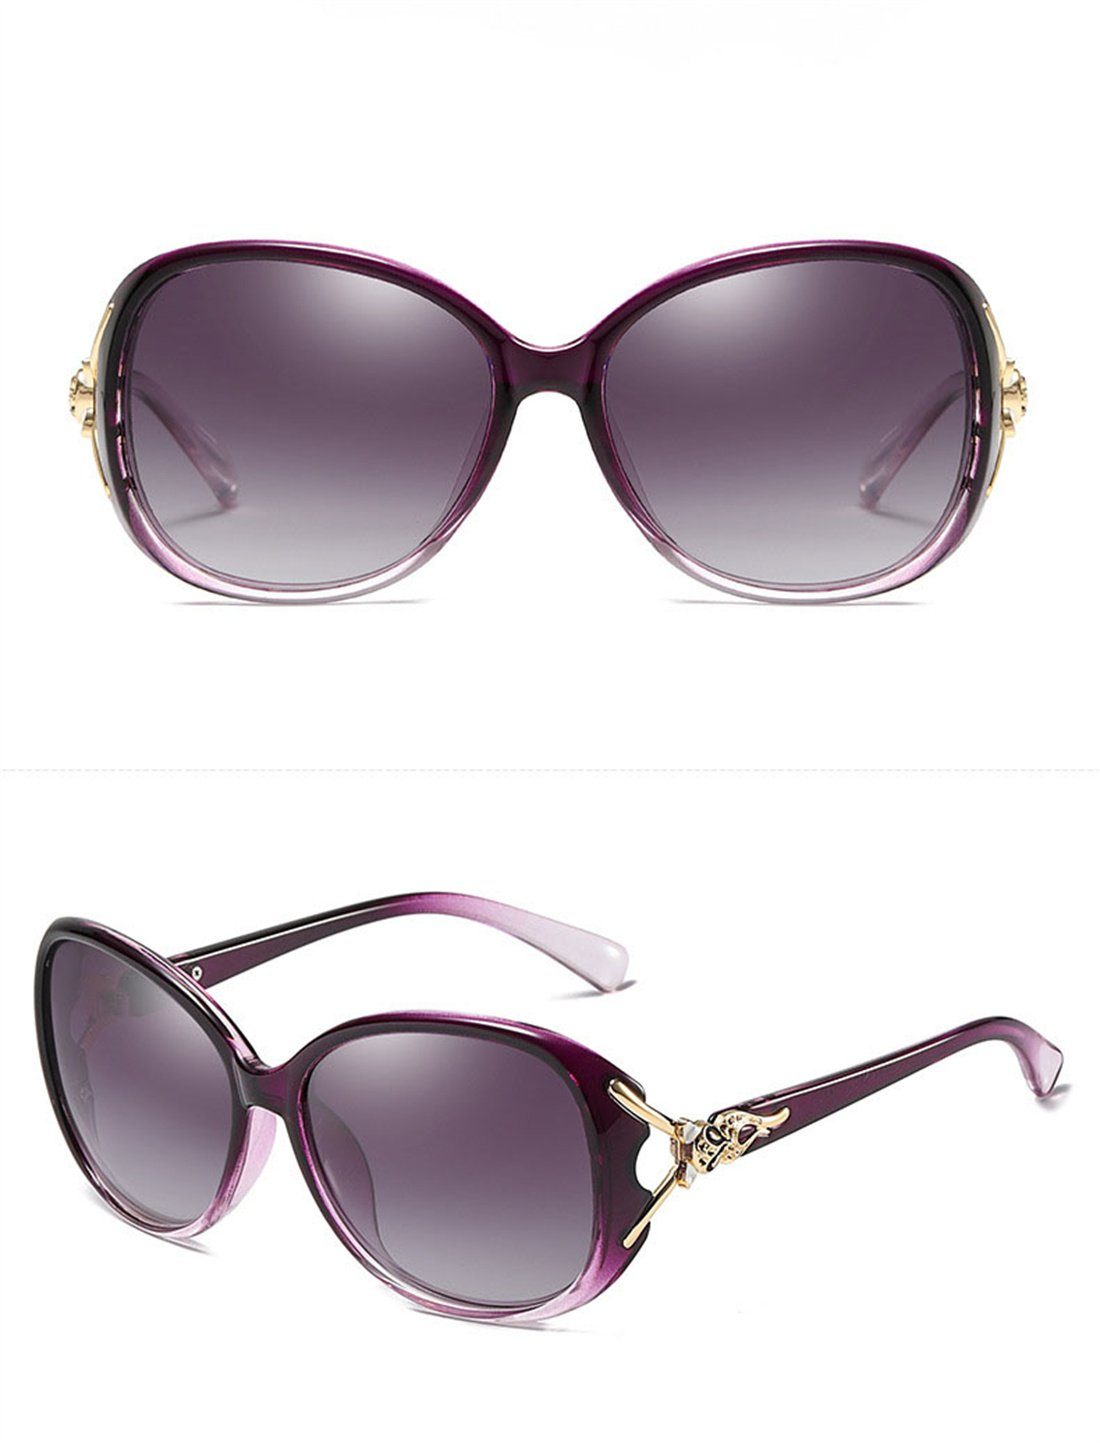 DÖRÖY Sonnenbrille Outdoor-Sonnenbrille Braun Damen-Sommer-Sonnenbrille, Polarisierende